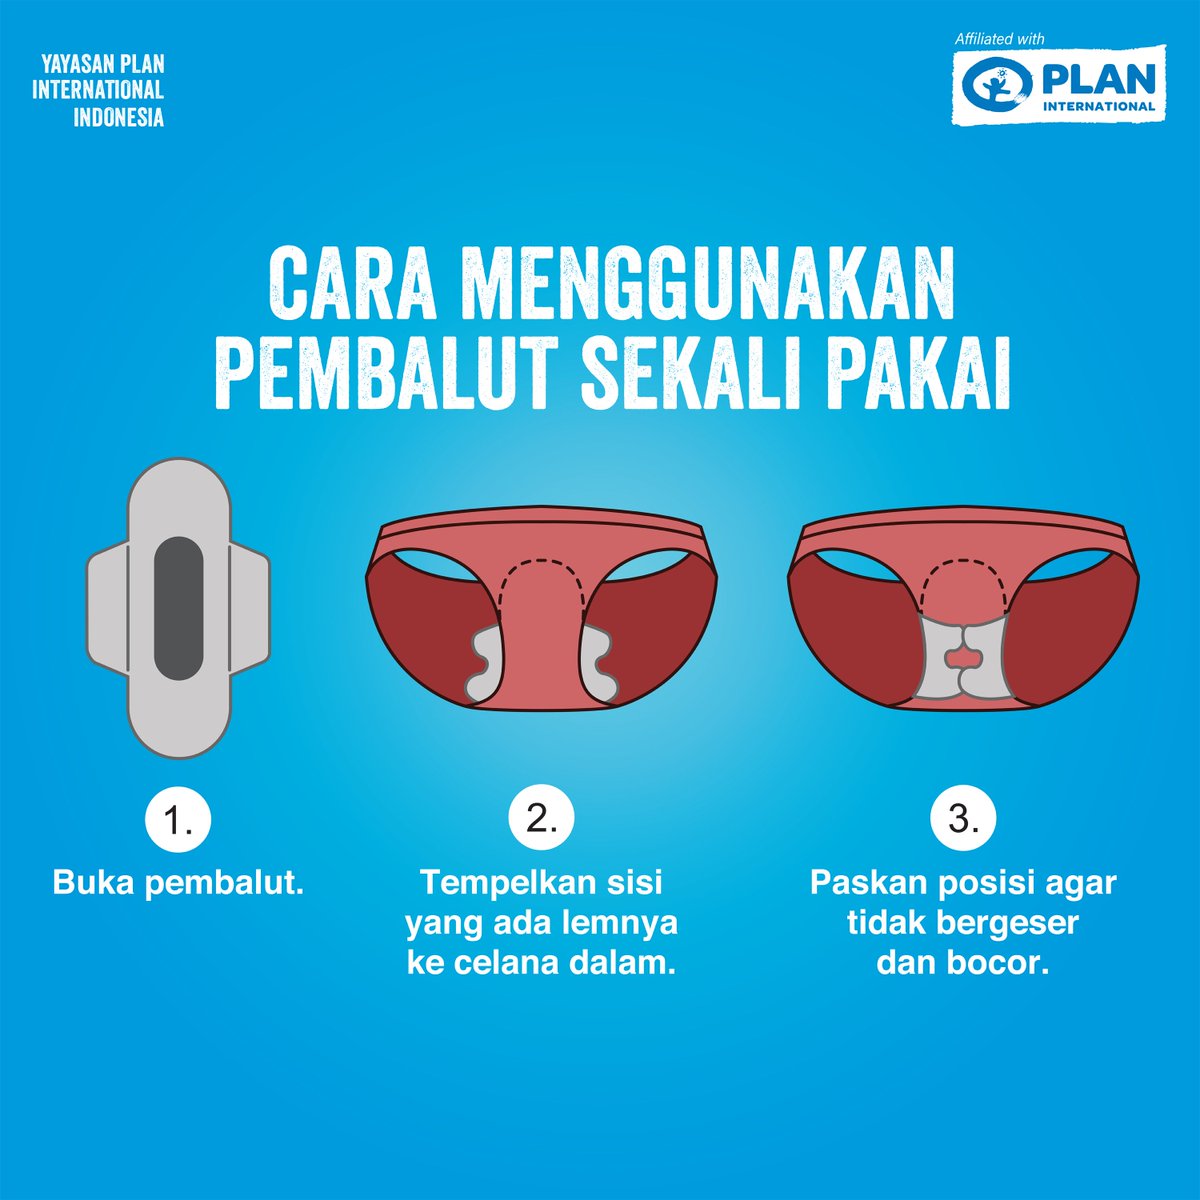 Yayasan Plan International Indonesia Sur Twitter Anak Perempuan Perlu Tahu Bagaimana Cara Memakai Pembalut Sekali Pakai Sebelum Mengalami Menstruasi Jangan Sampai Sahabat Terlambat Tahu Dan Menjadi Panik Saat Mengalaminya Pertama Kali